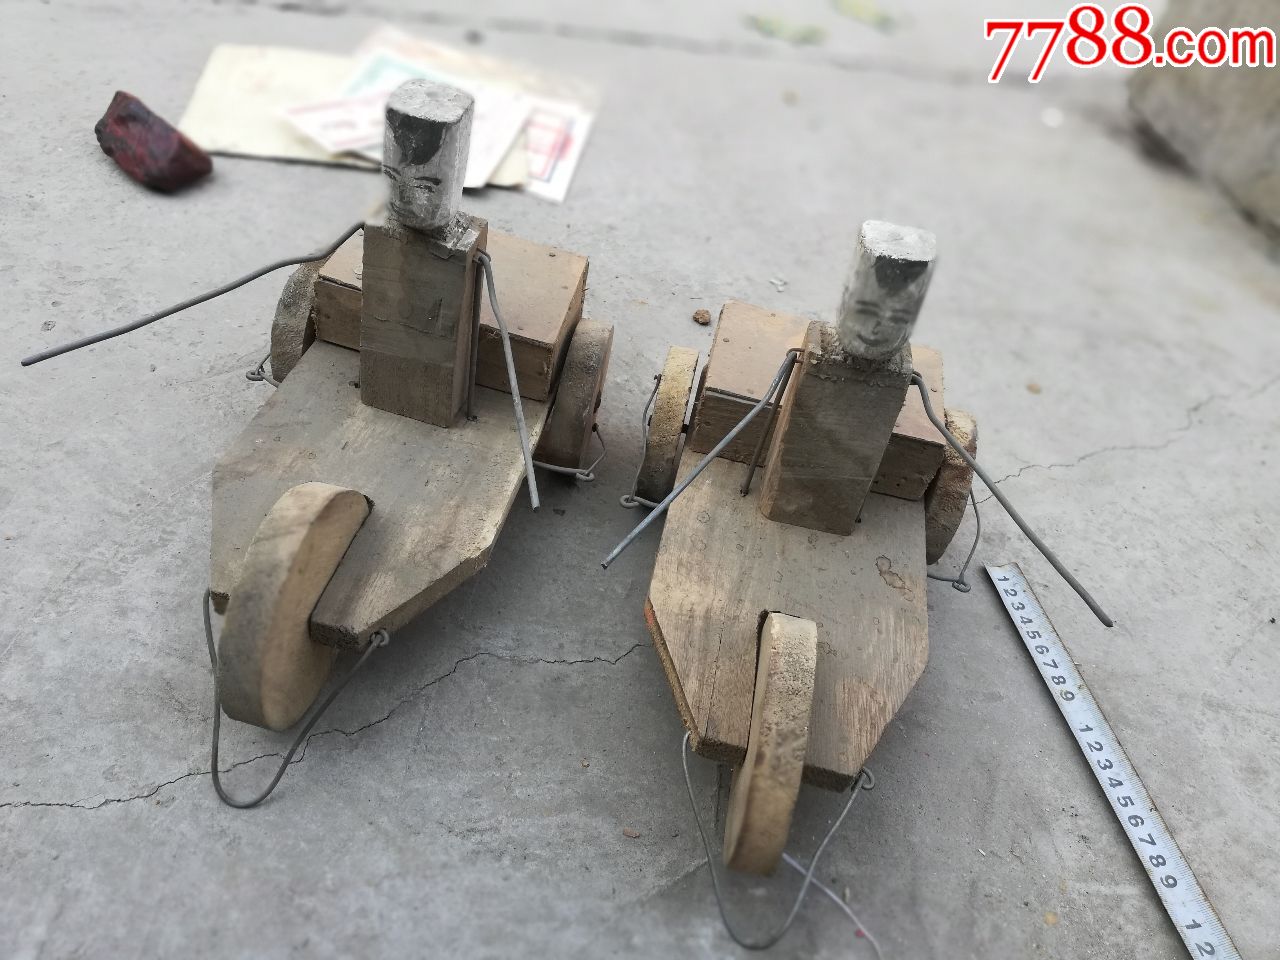 早期玩具老玩具;七八十年代的木质童车2辆稀有少见,音乐车拉动可拍